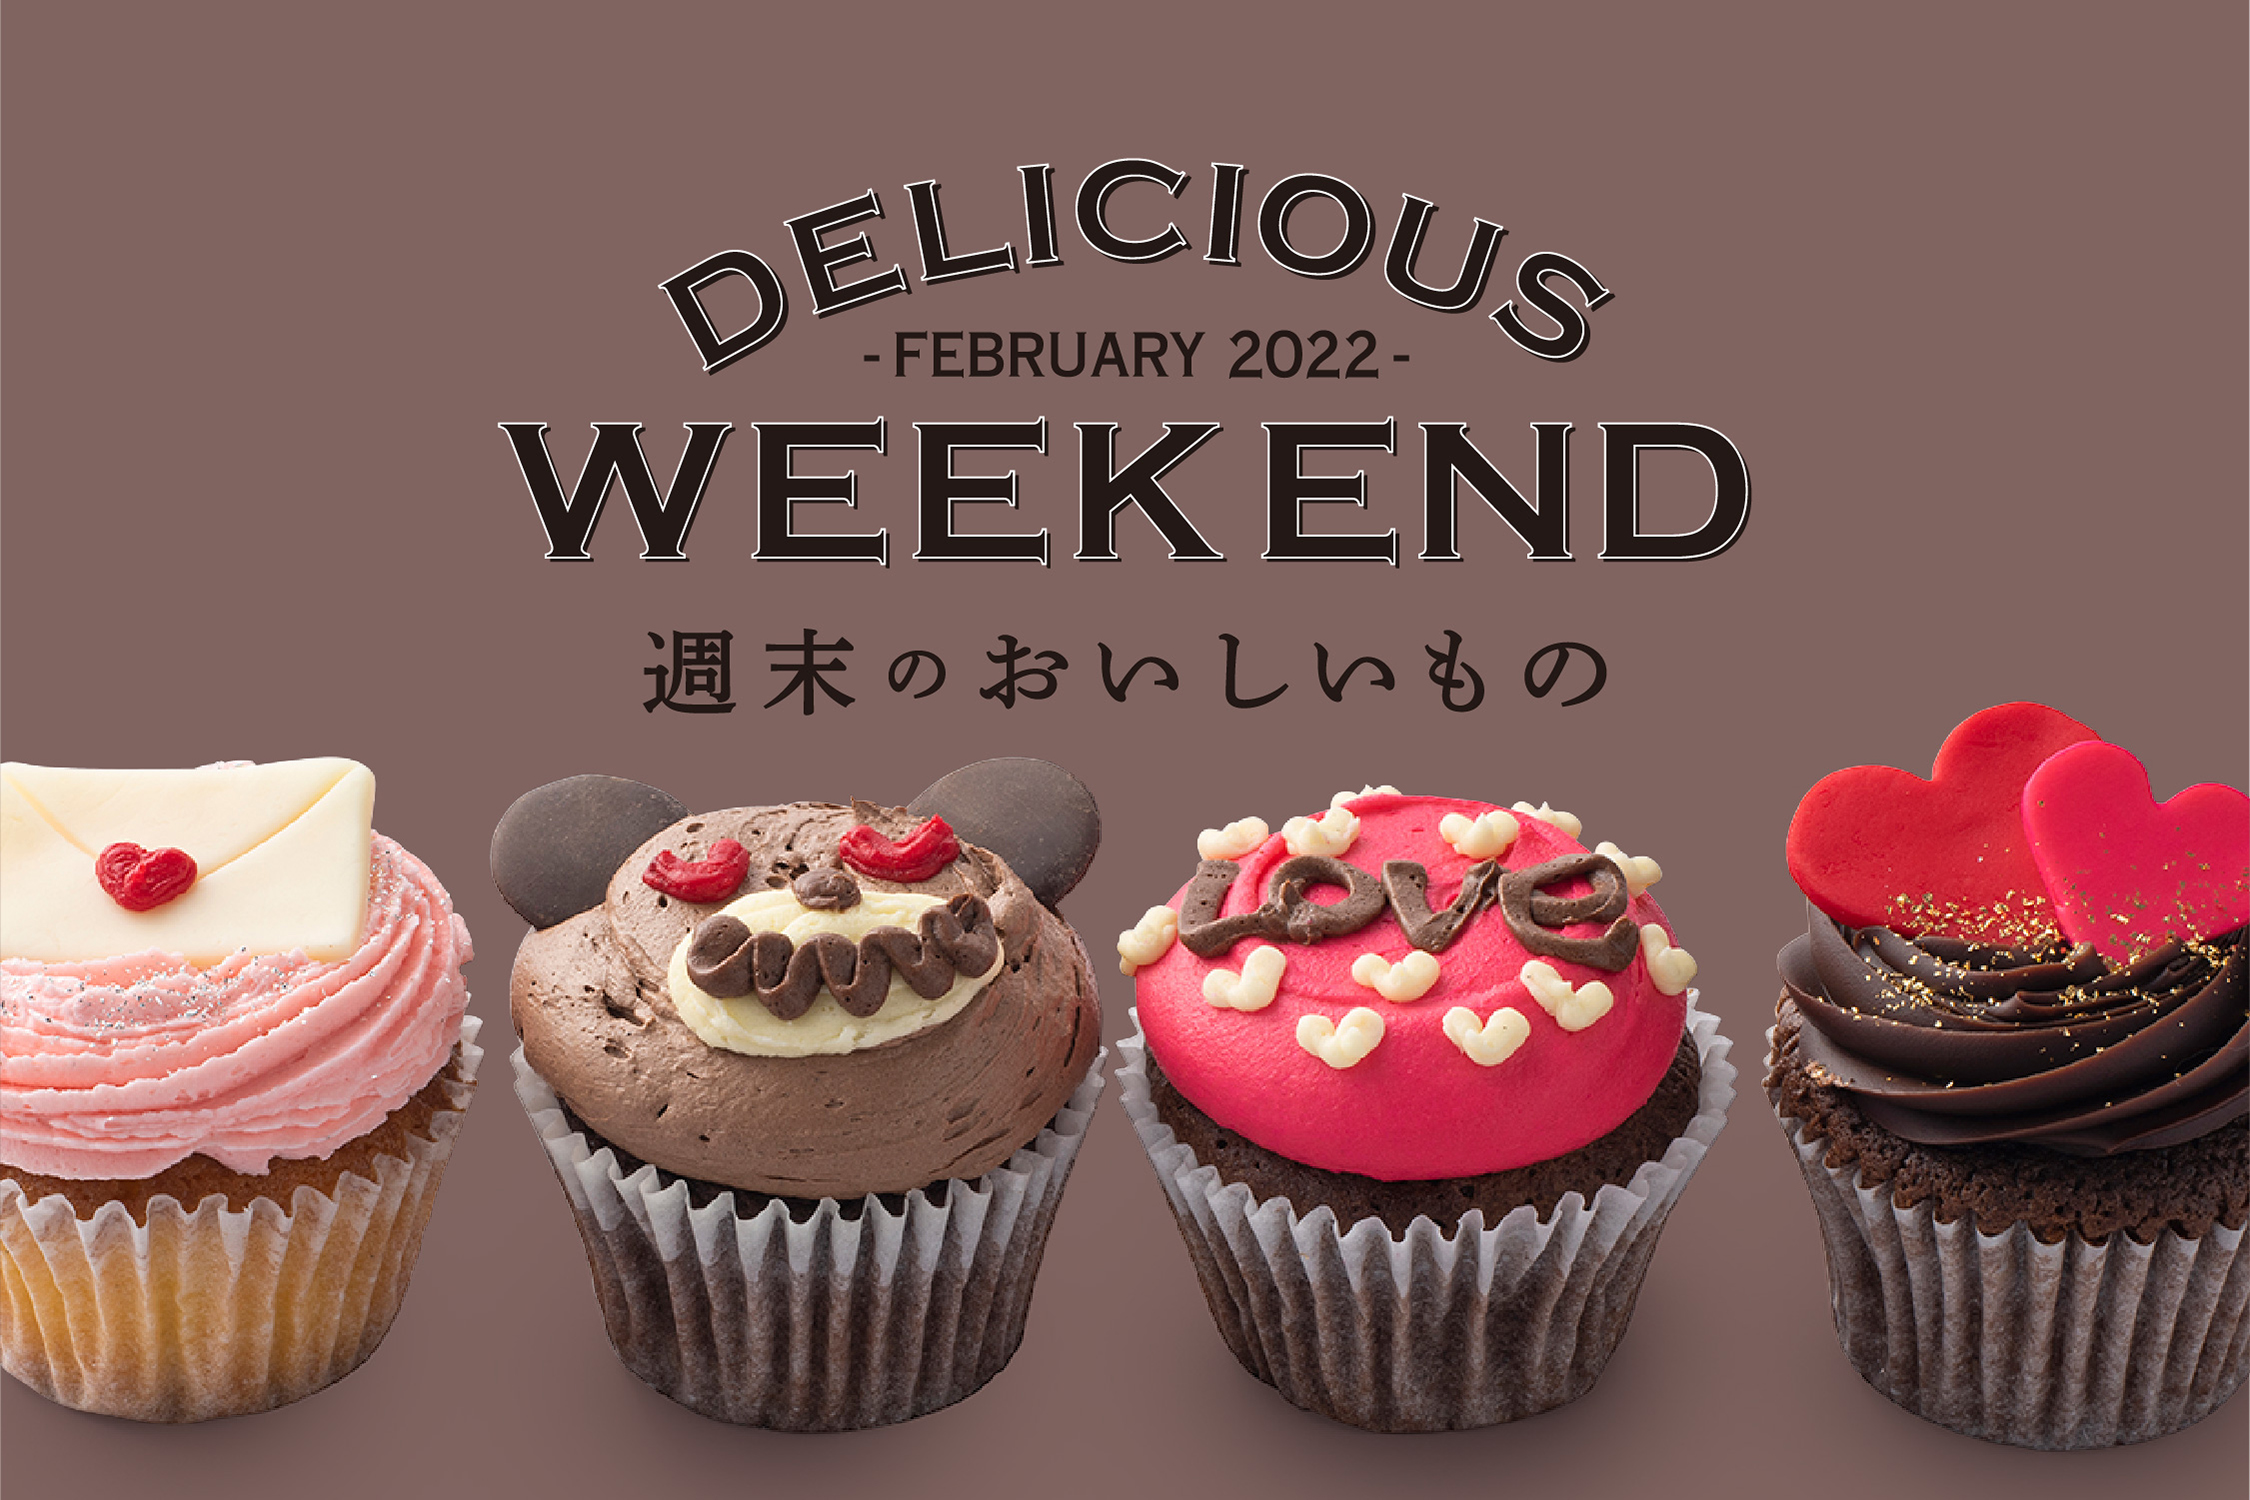 Dean Deluca 週末限定 2月のおいしいもの チョコレートのスイーツとベーカリー 株式会社ウェルカムのプレスリリース